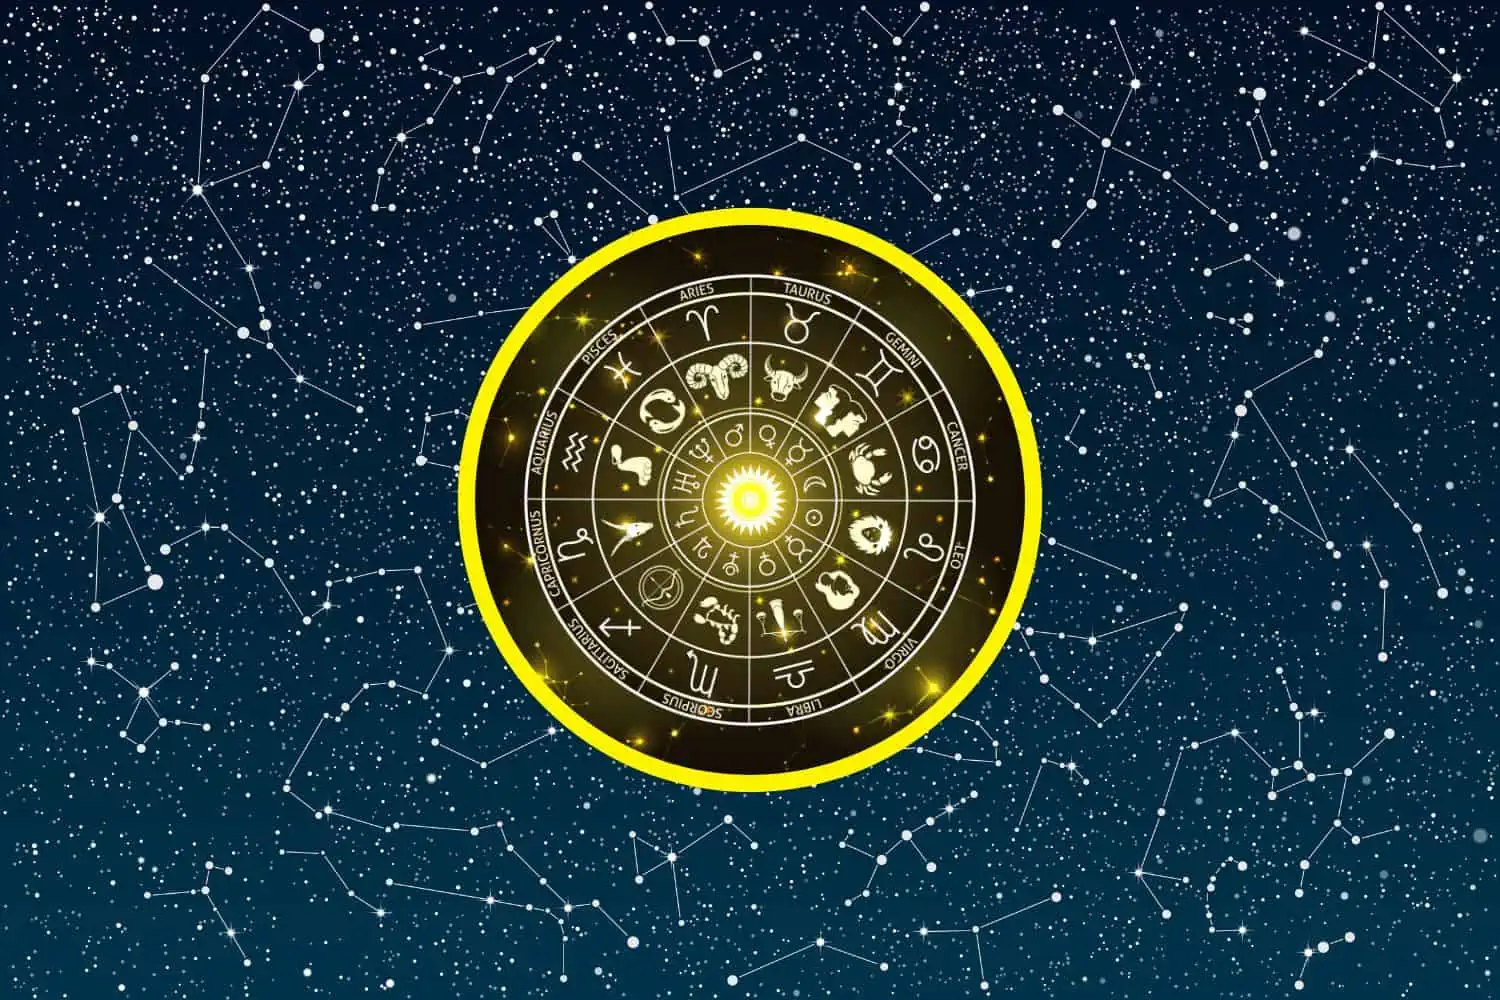 Today’s Free Horoscopes Tuesday 28 February 2023